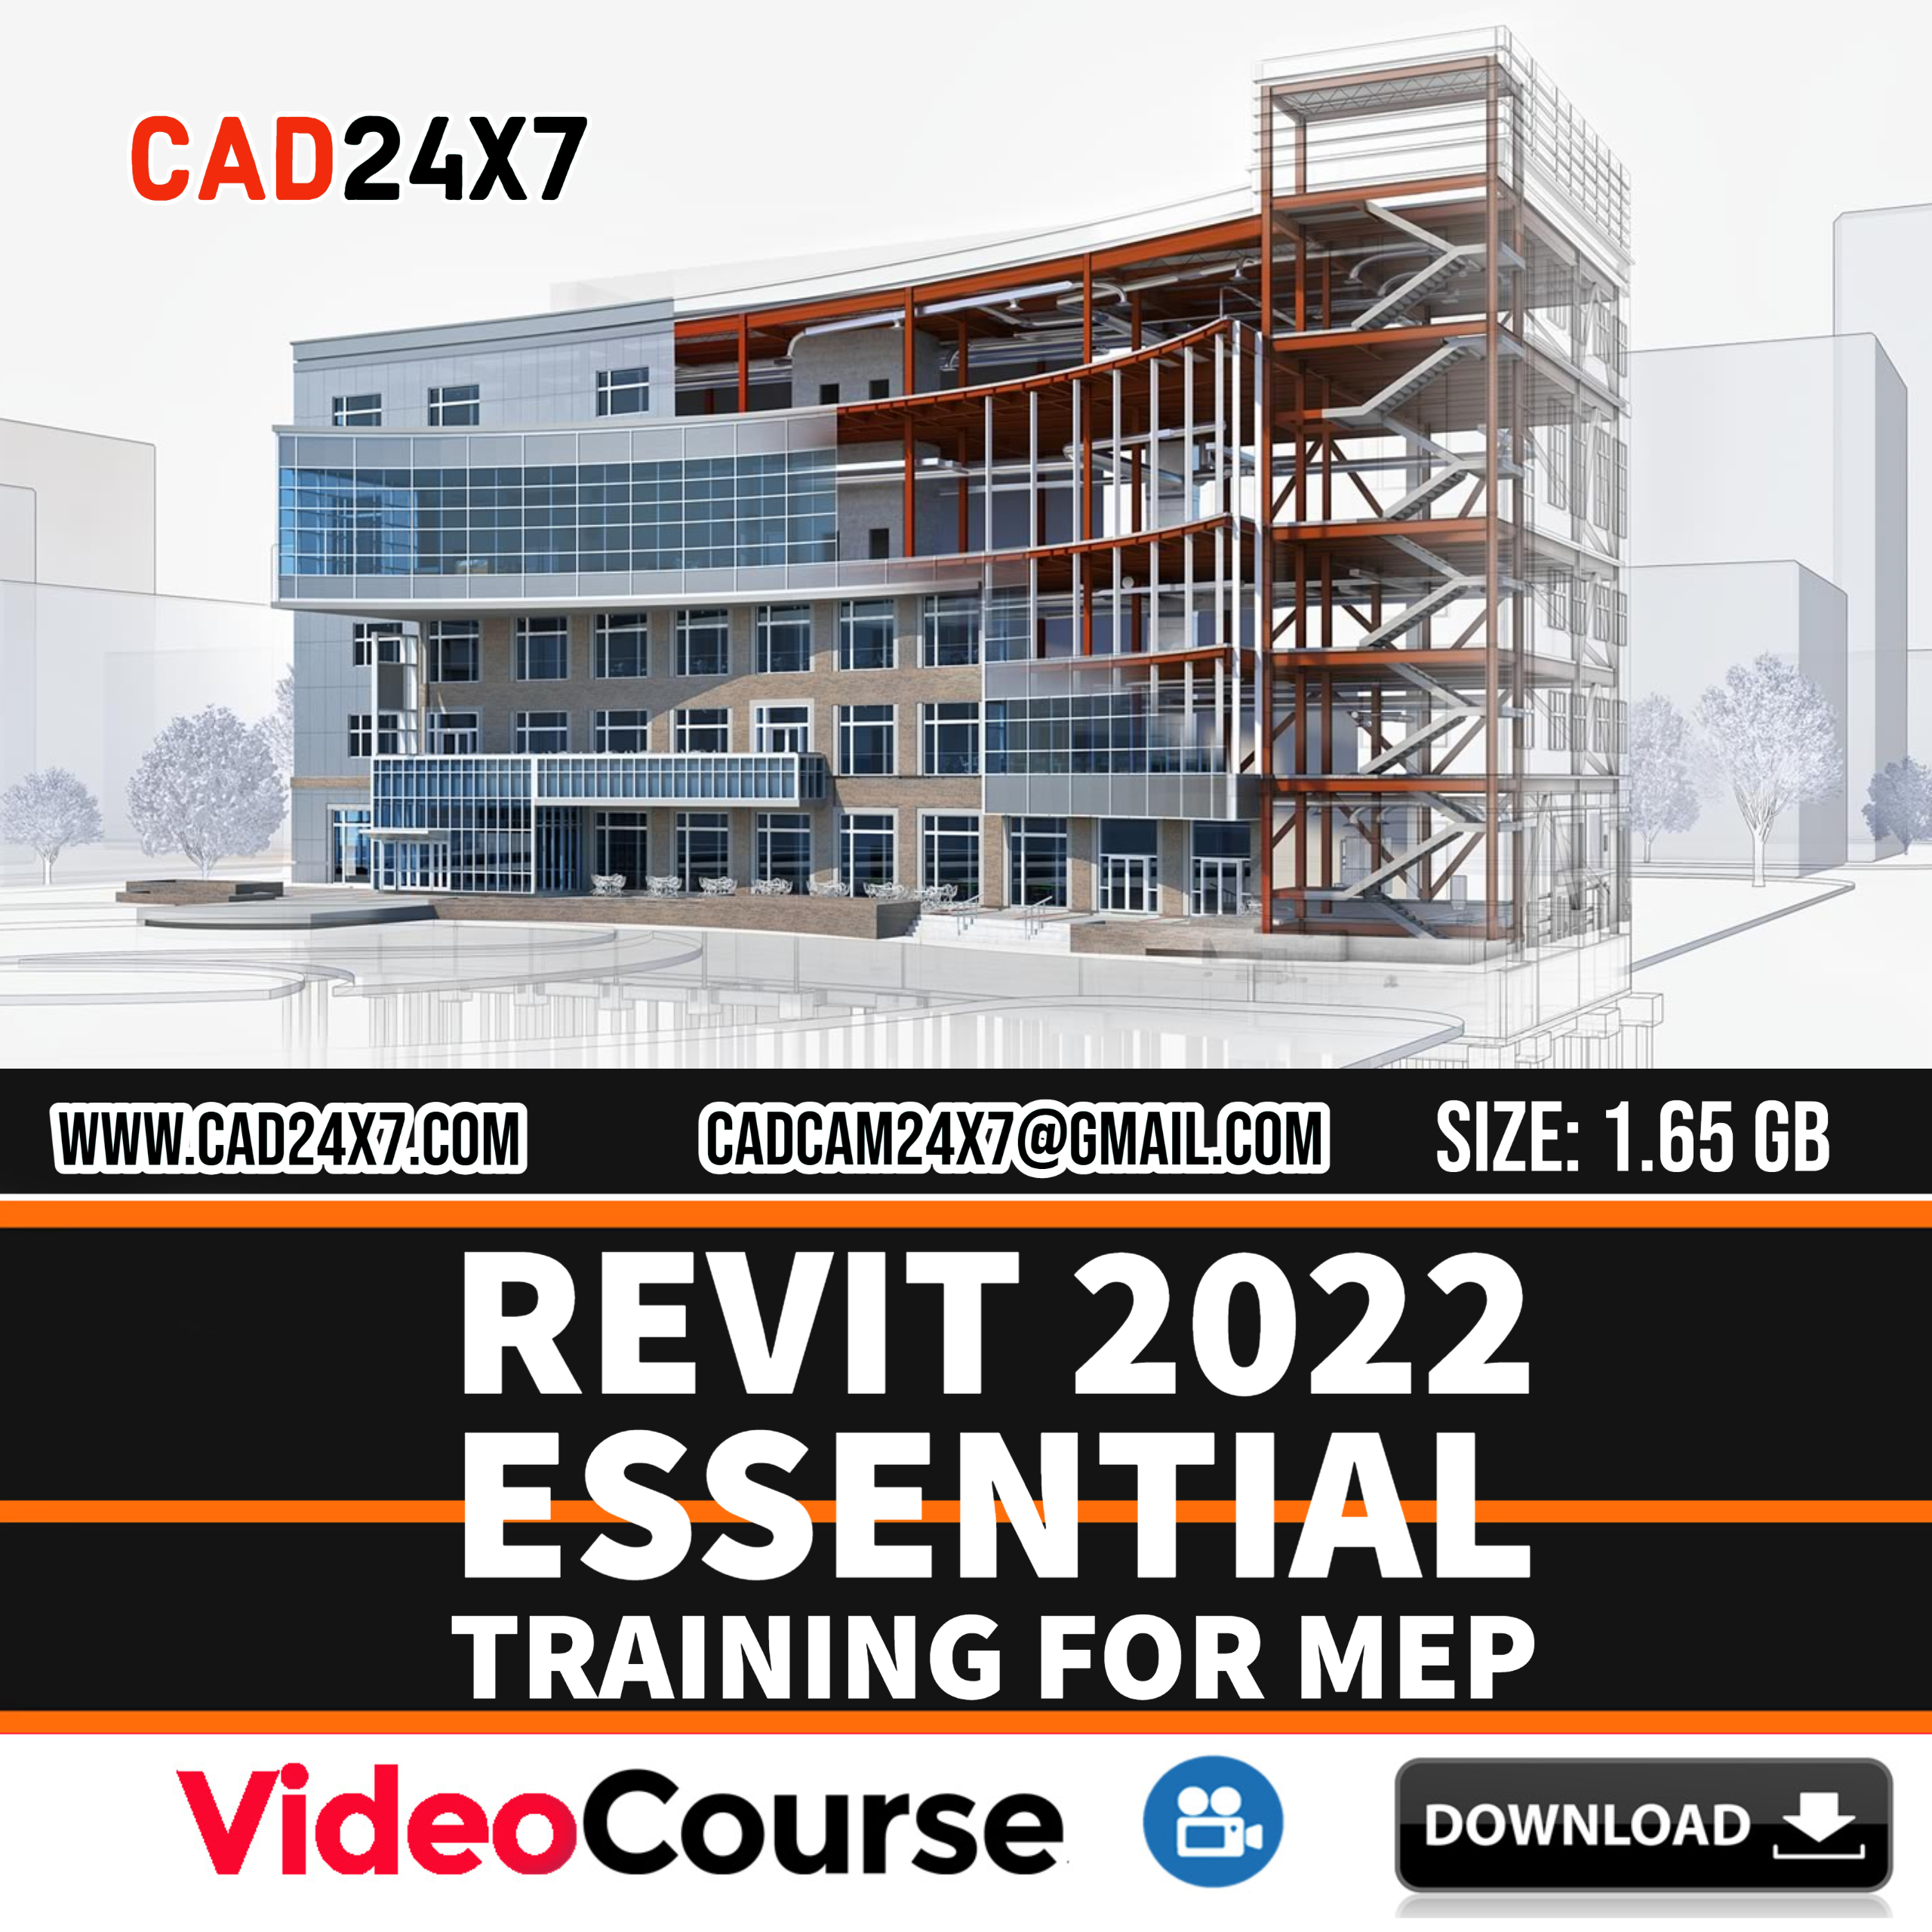 Revit 2022 Essential Training for MEP